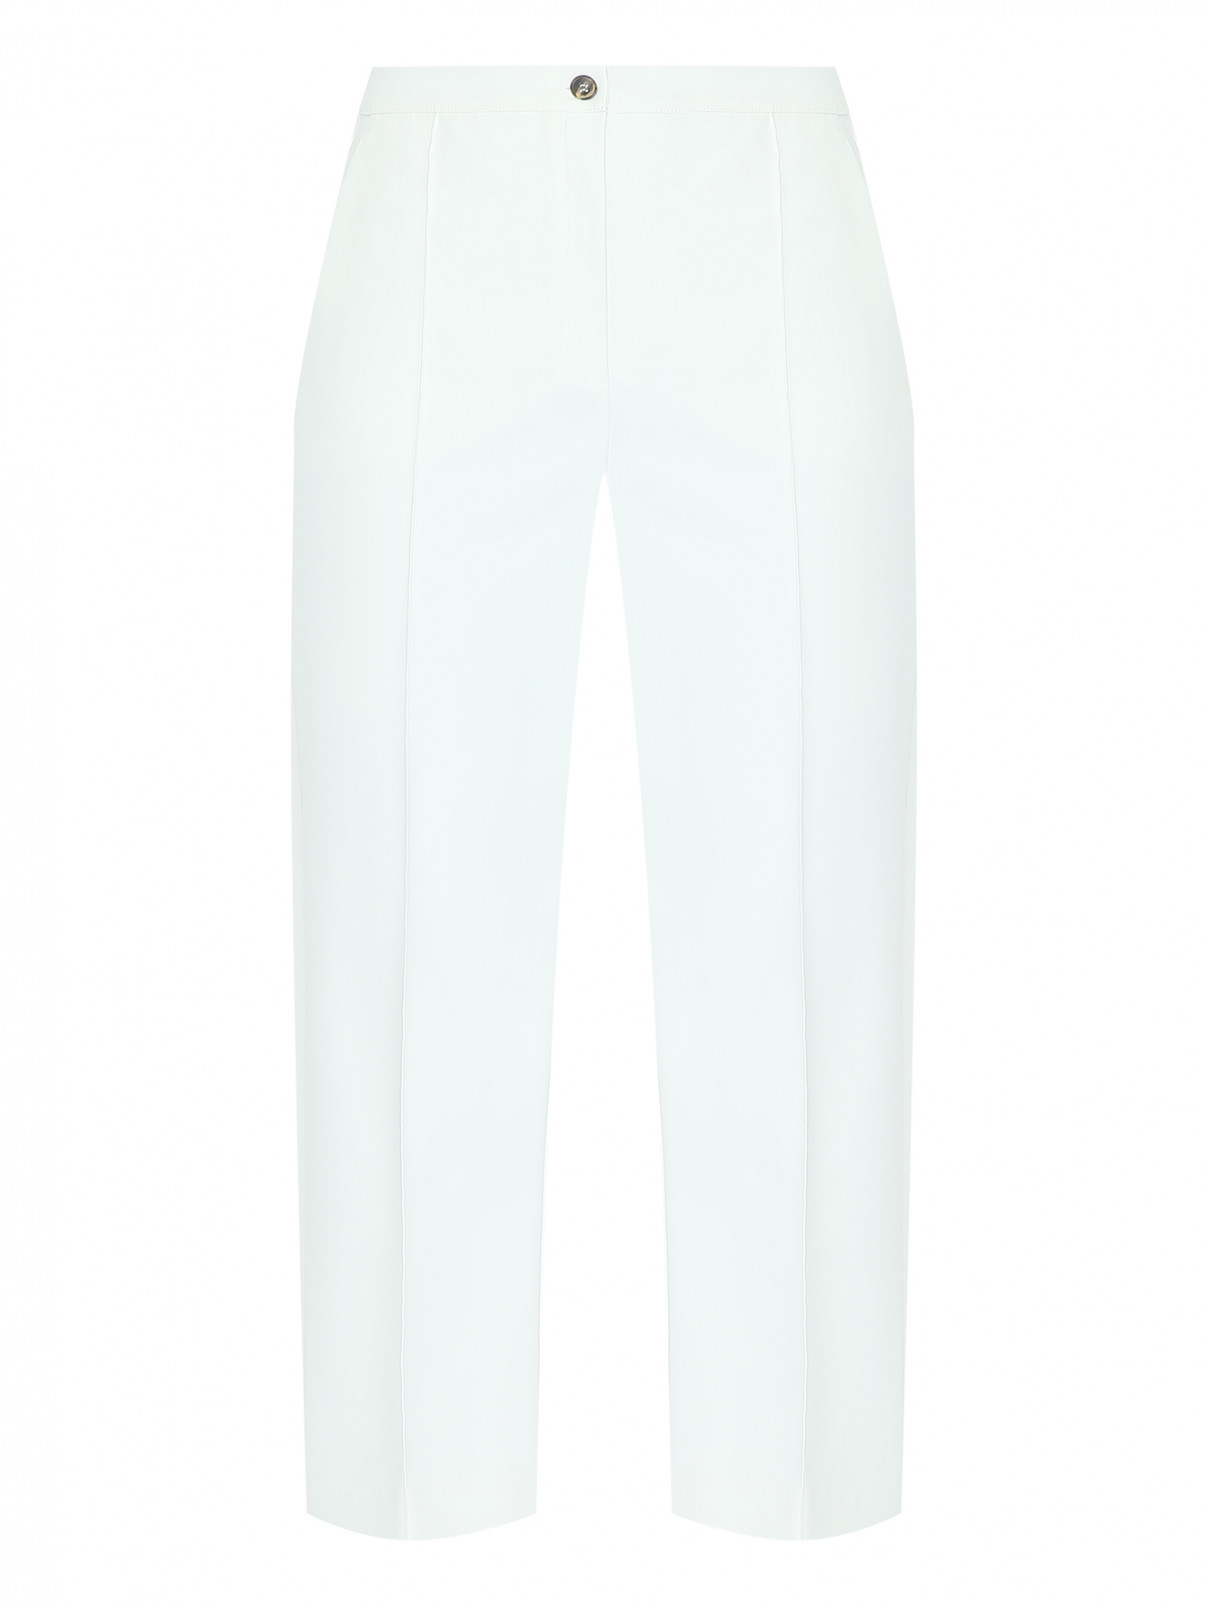 Прямые брюки со стрелками Marina Rinaldi  –  Общий вид  – Цвет:  Белый